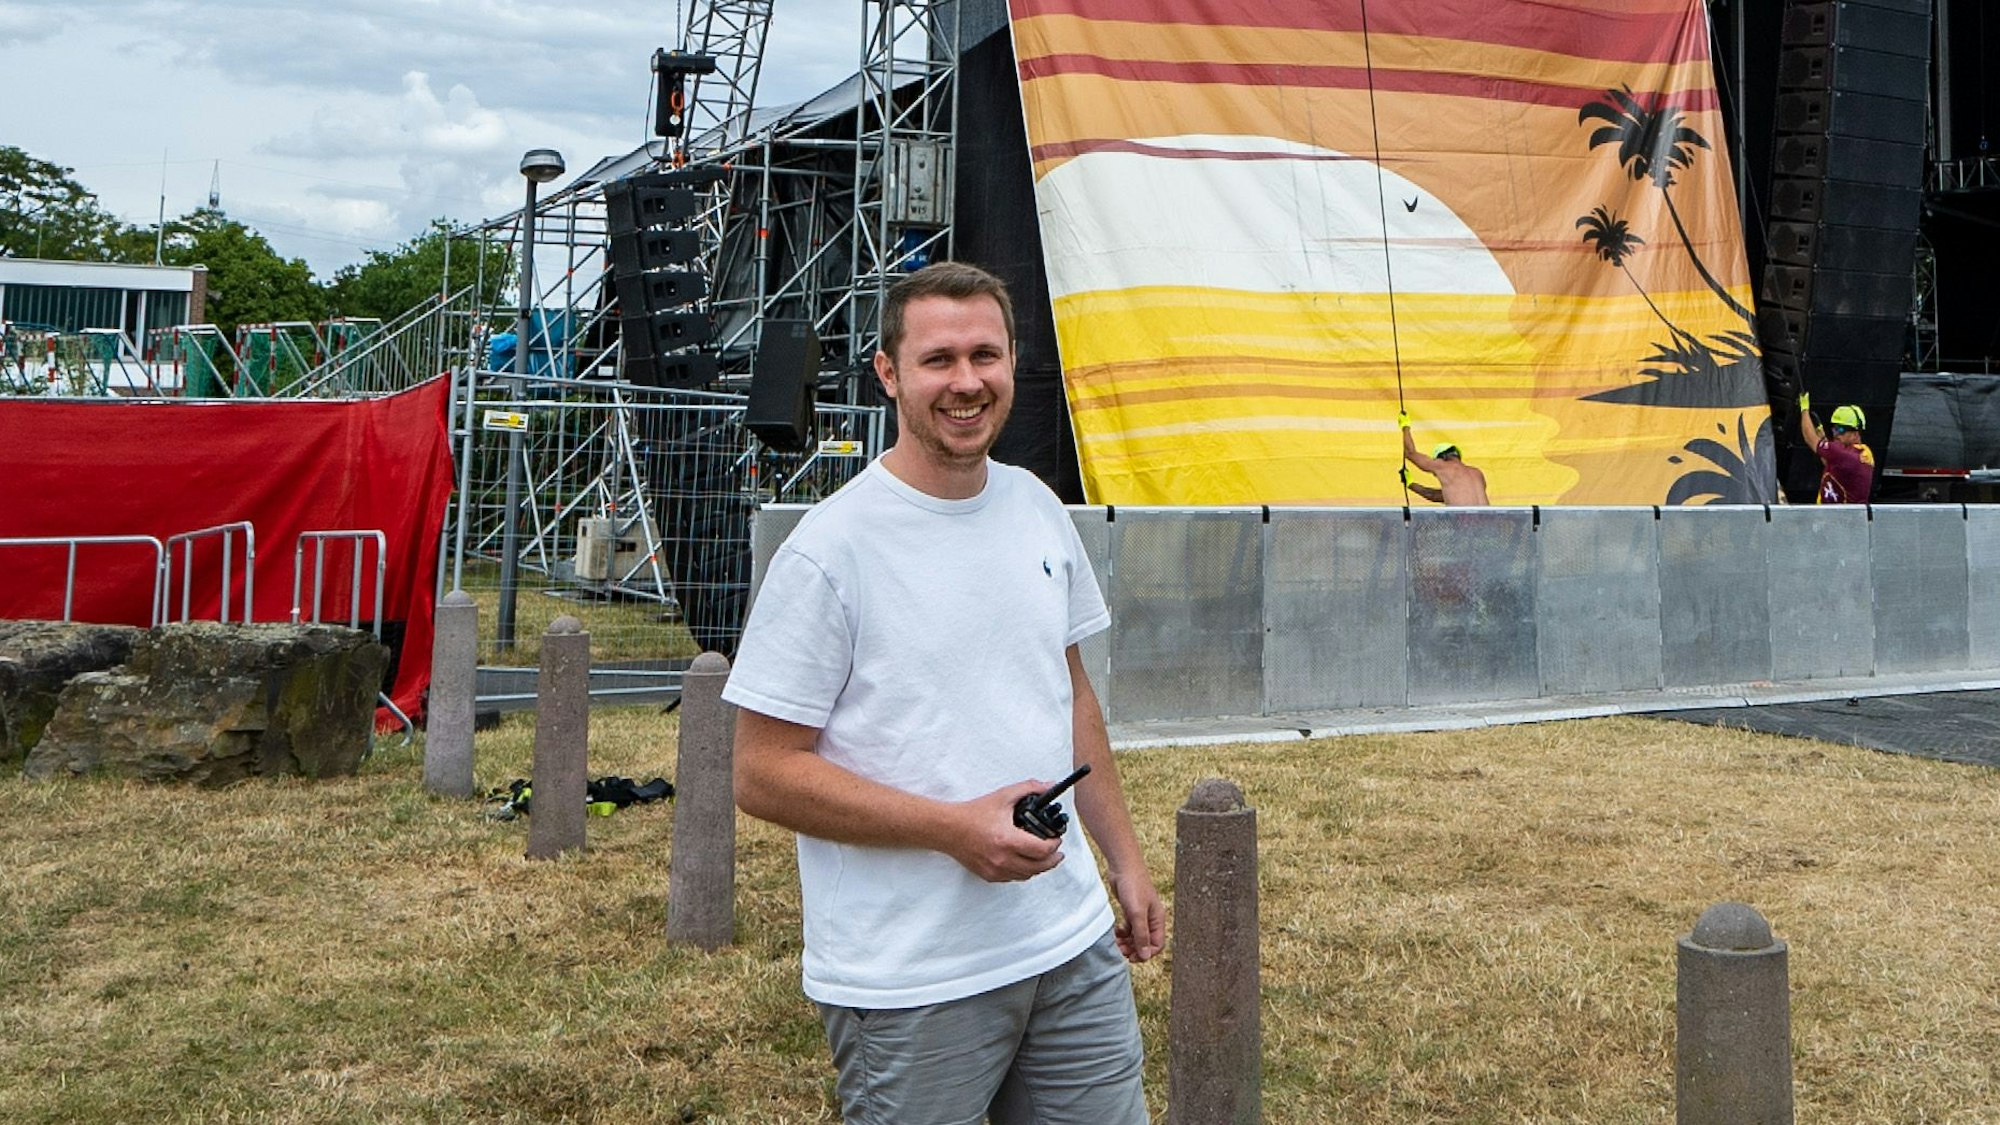 Marius Brozi ist Veranstalter des Summerjam Festival. Er hat die Leitung während der Corona-Pause übernommen.